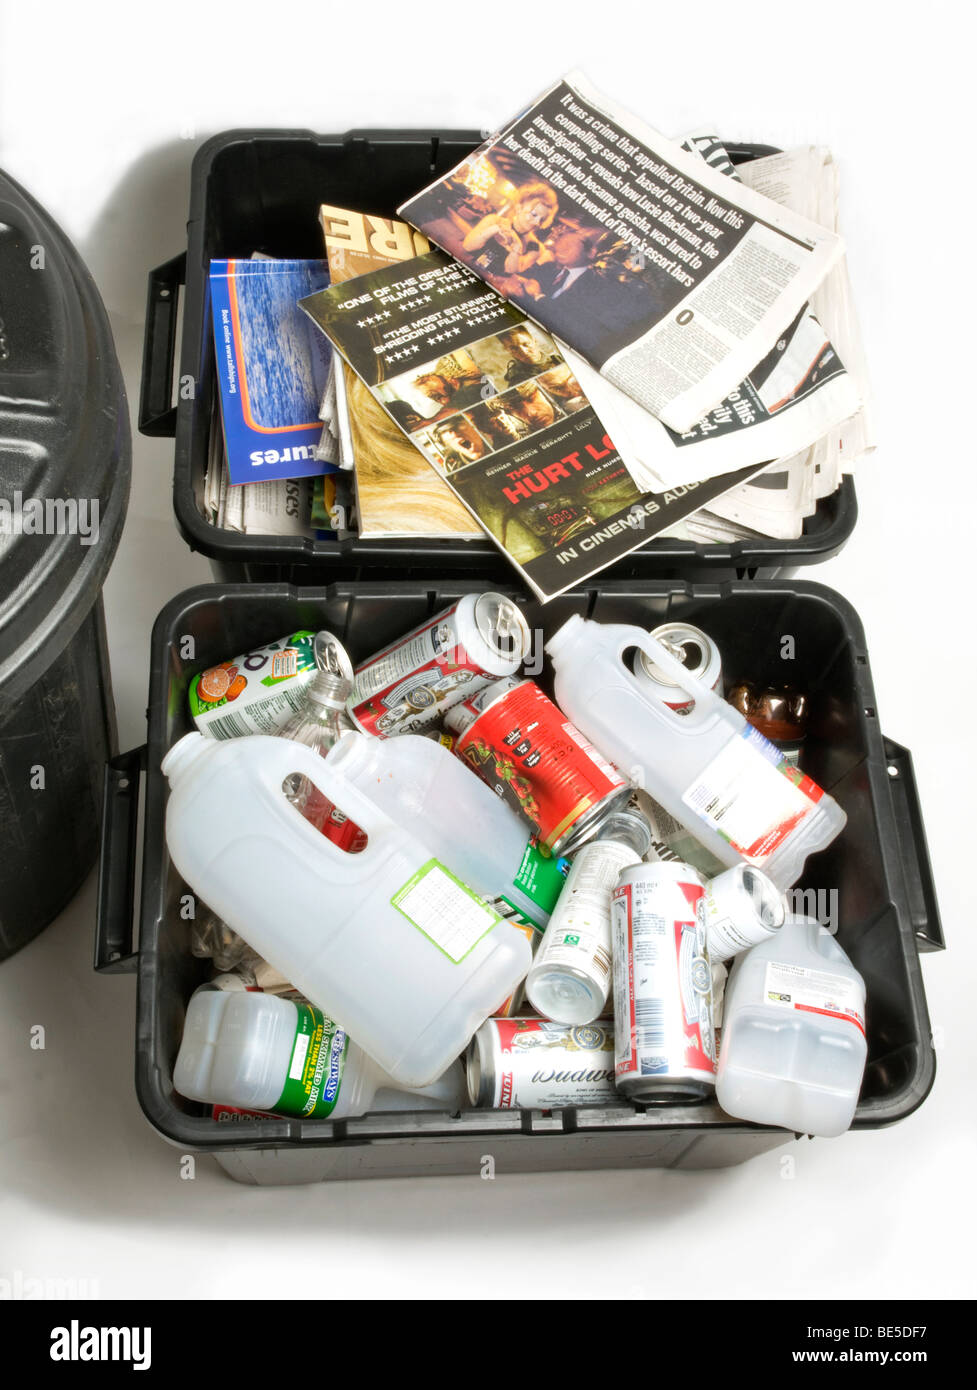 Sammlung von Hausmüll, zeigt getrennt Abfälle zur re - Radfahren, Papier bin Plastikeimer und inländischen Hausmüll Stockfoto